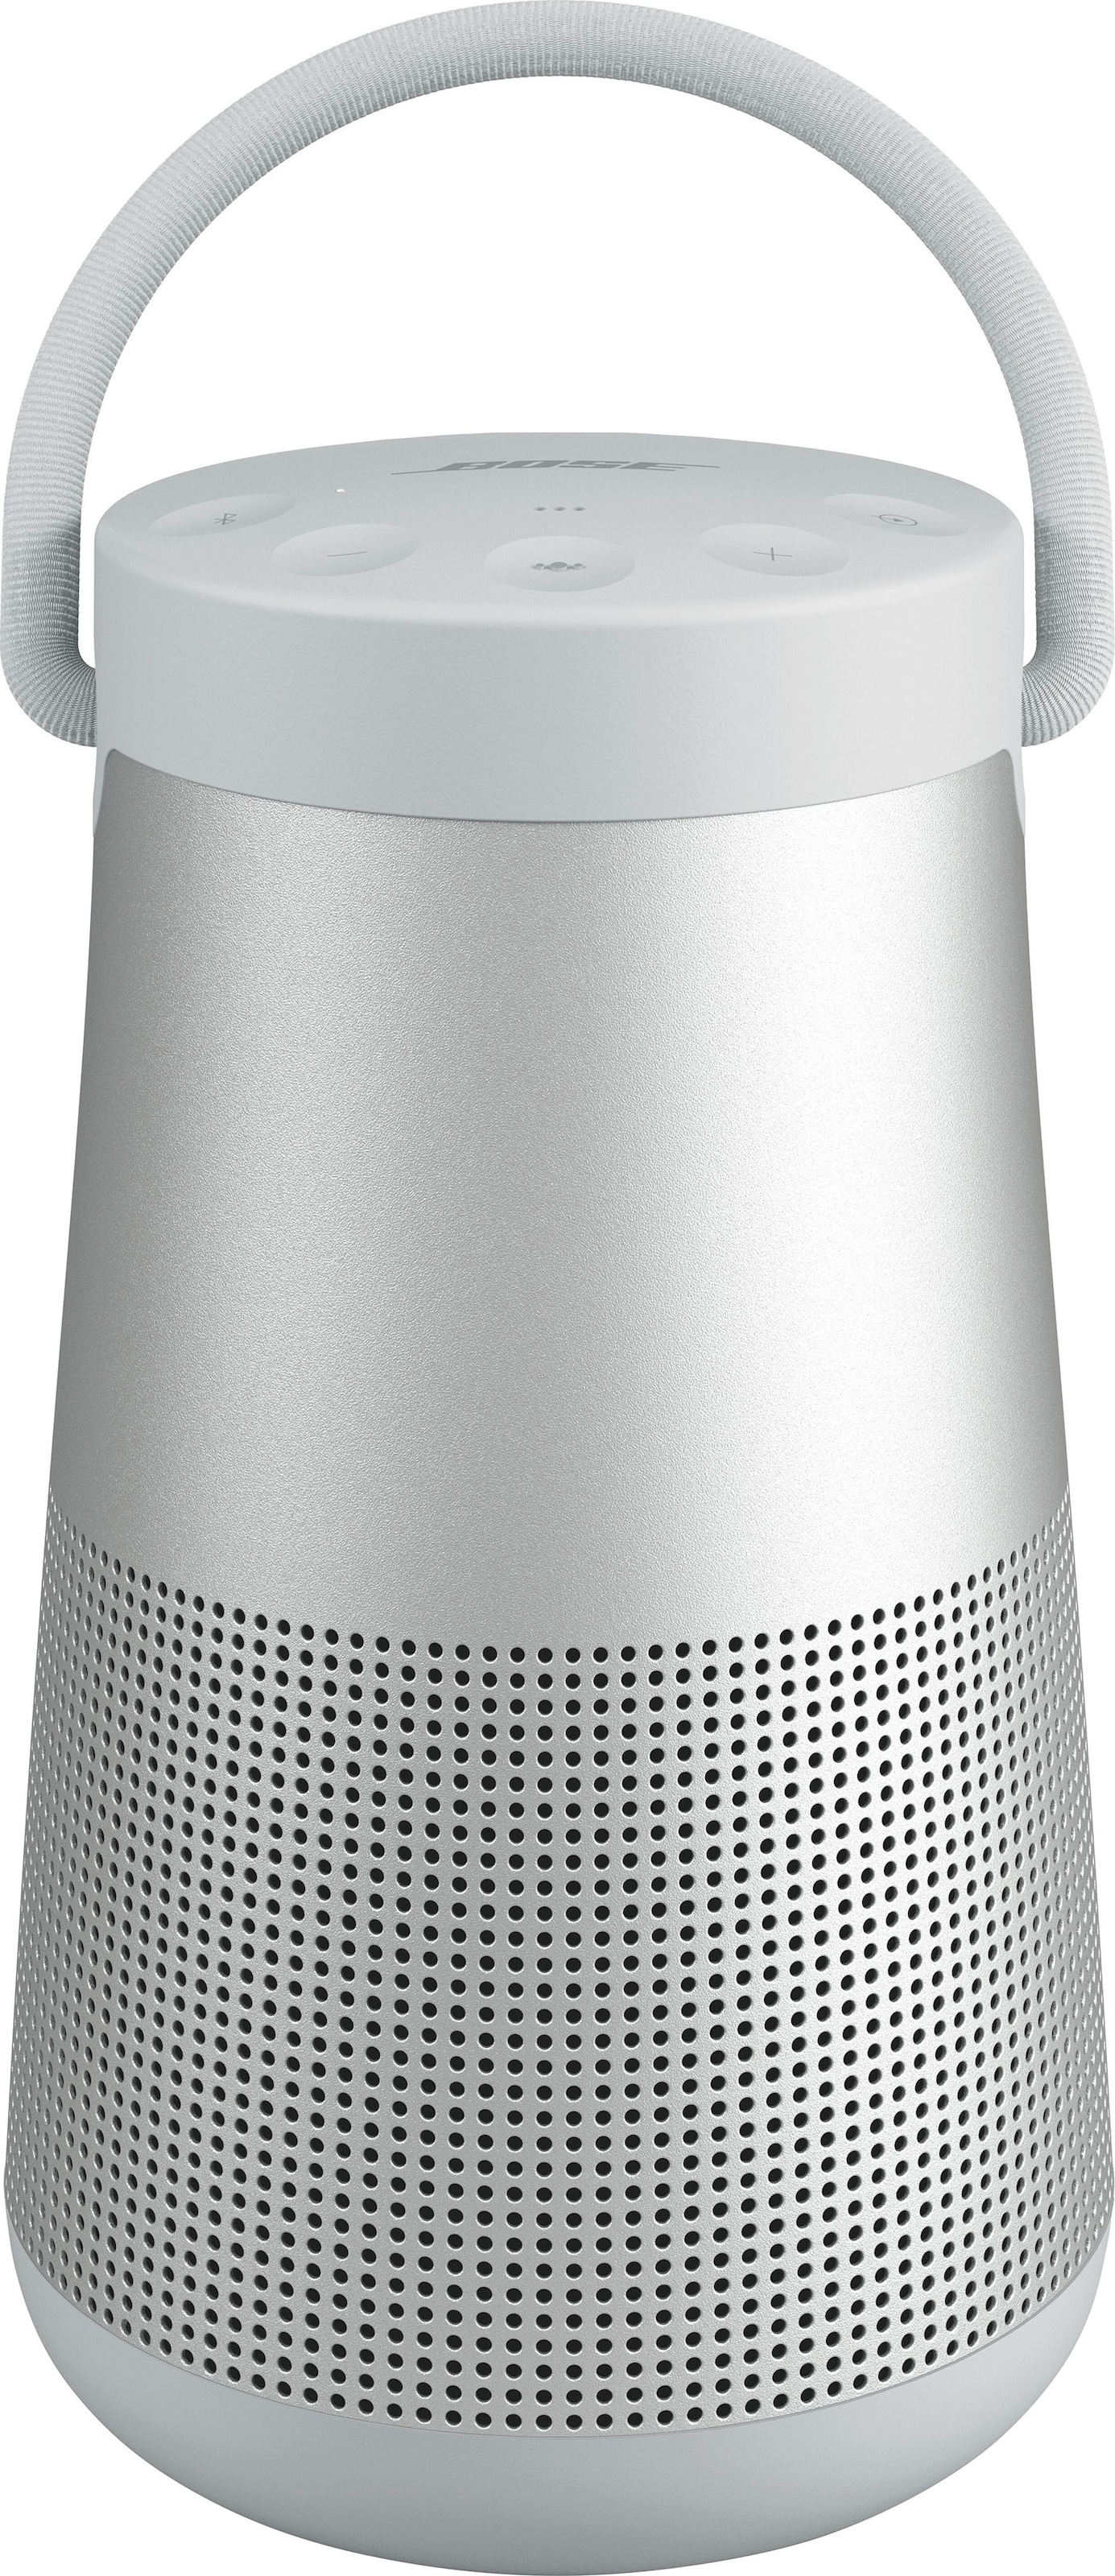 Bose Bluetooth-Lautsprecher »SoundLink Revolve+ II Stereo«, IP55 Wasserabweisend, 360°-Klang, Partymodus: Lautsprecher koppeln